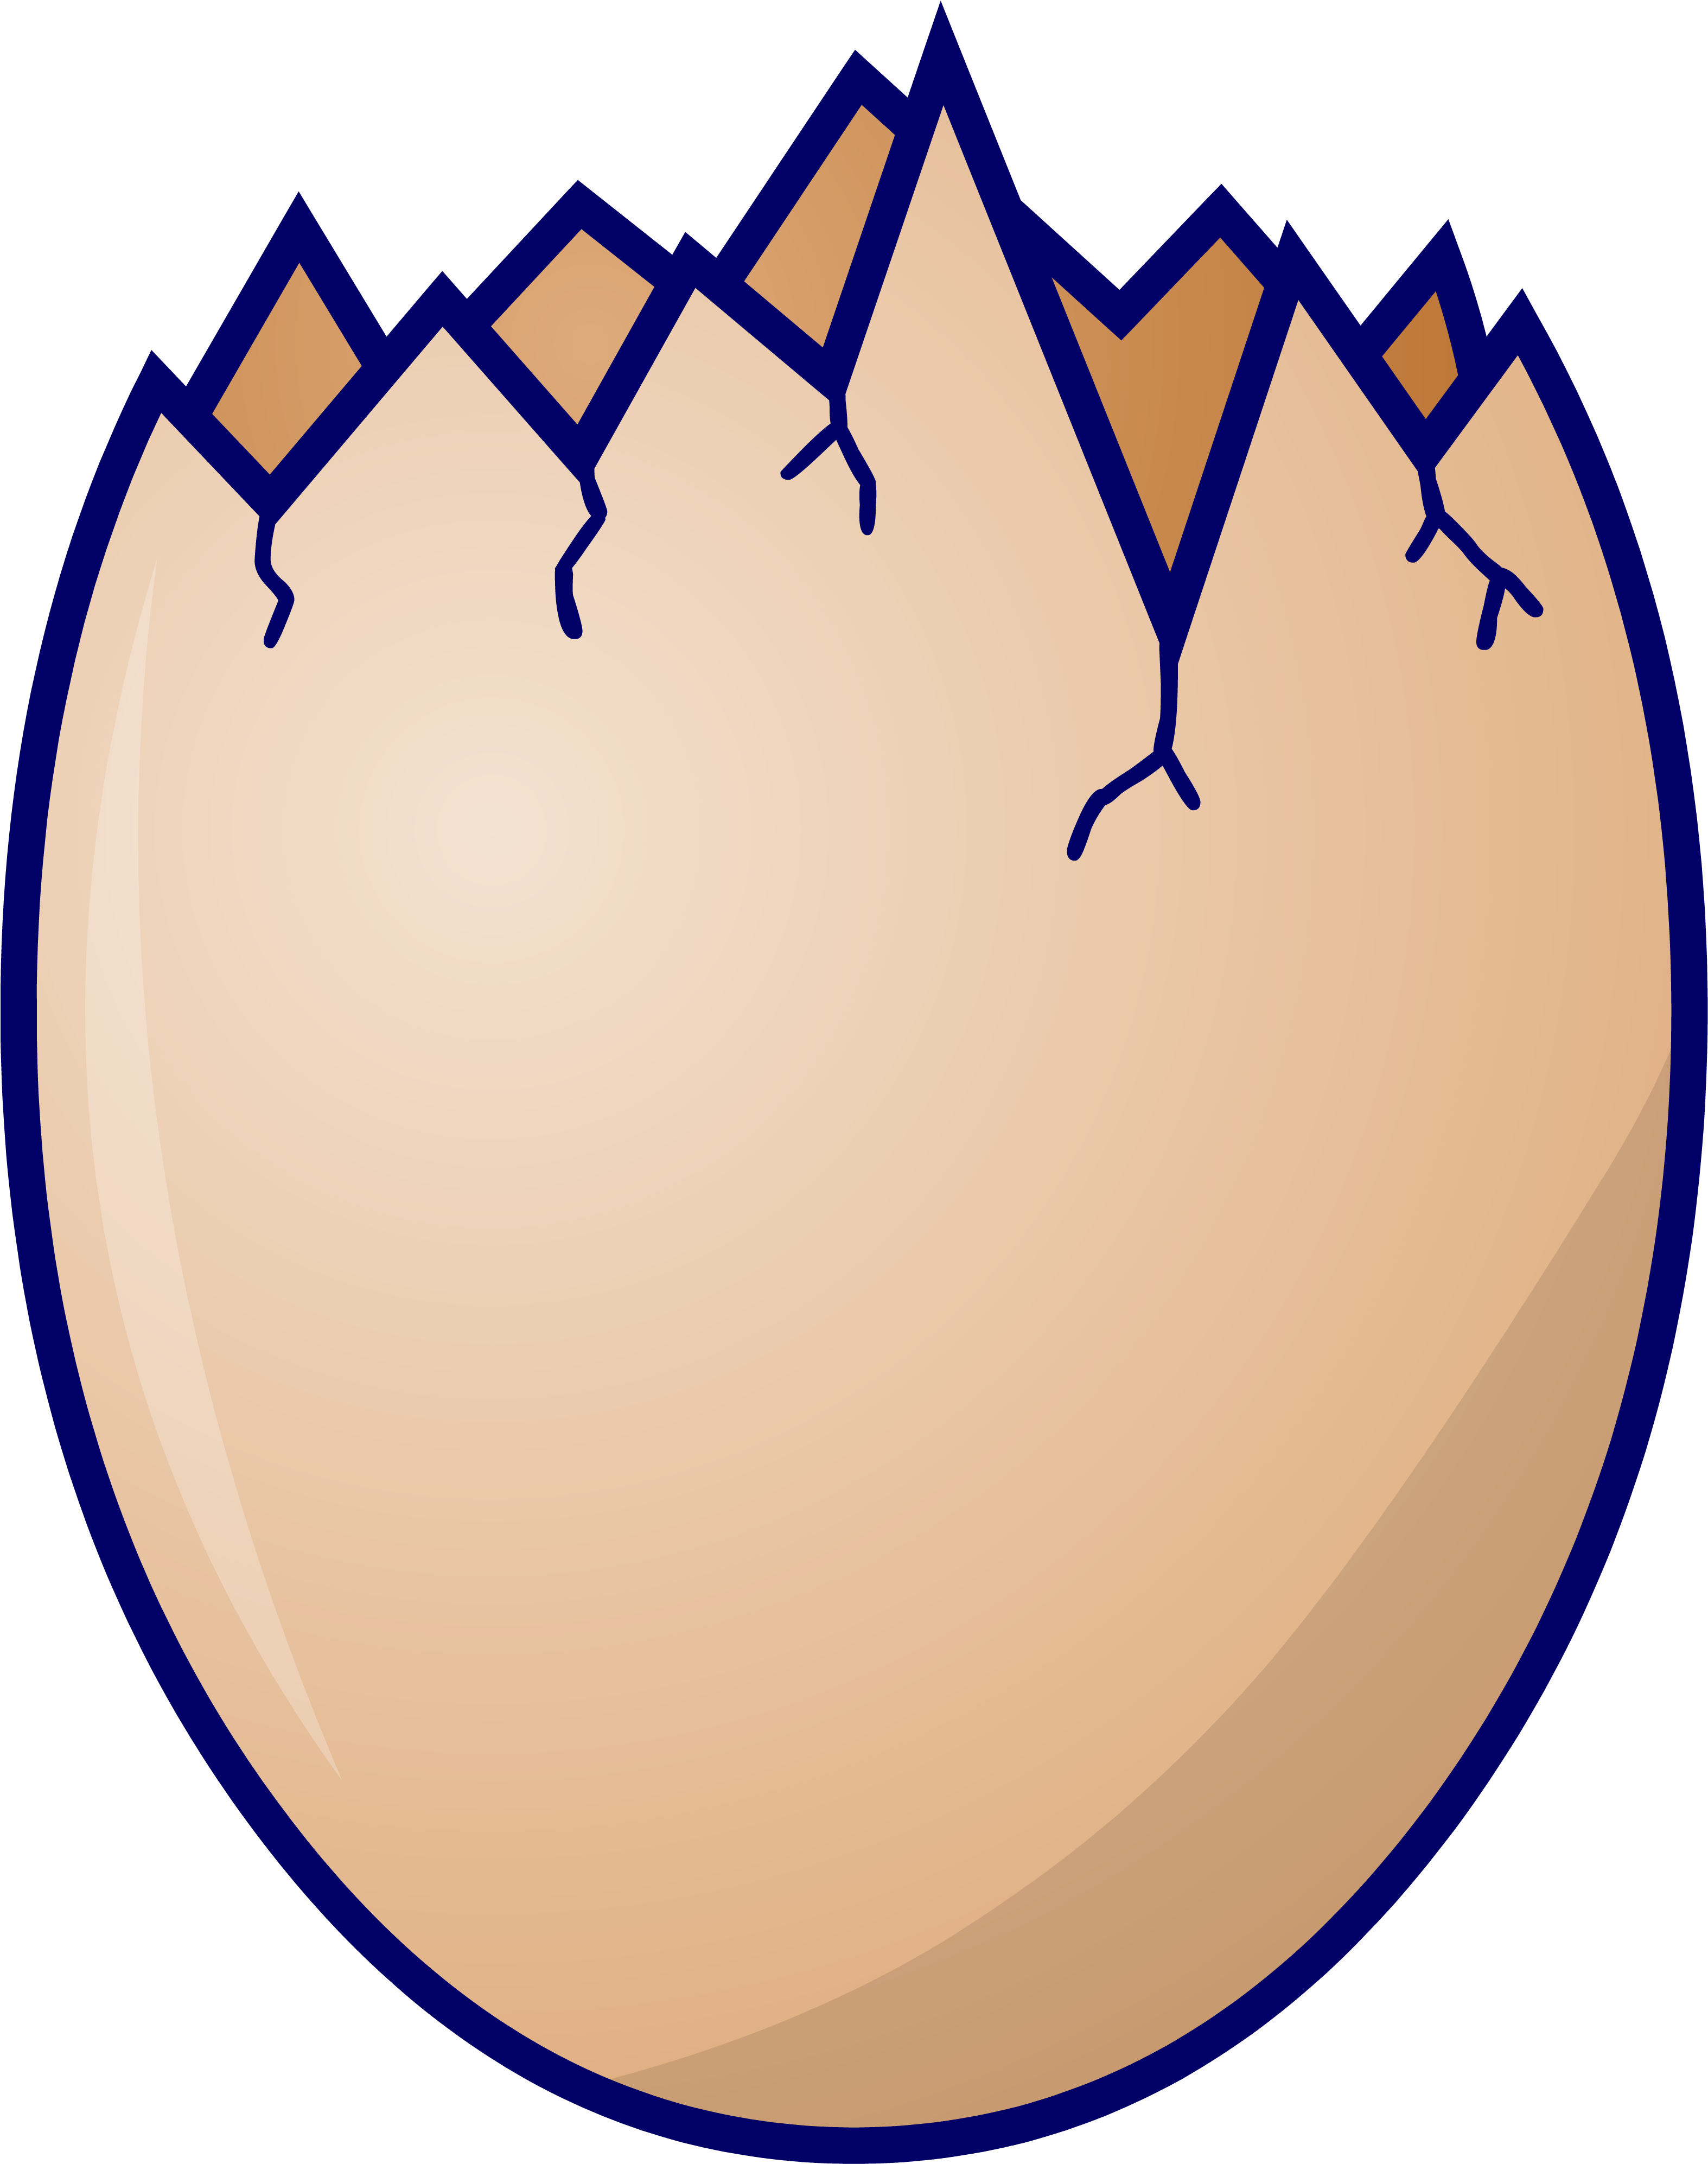 Cracked Egg Shell Clipart - Cracked Egg Shell Clipart (3160x4000)